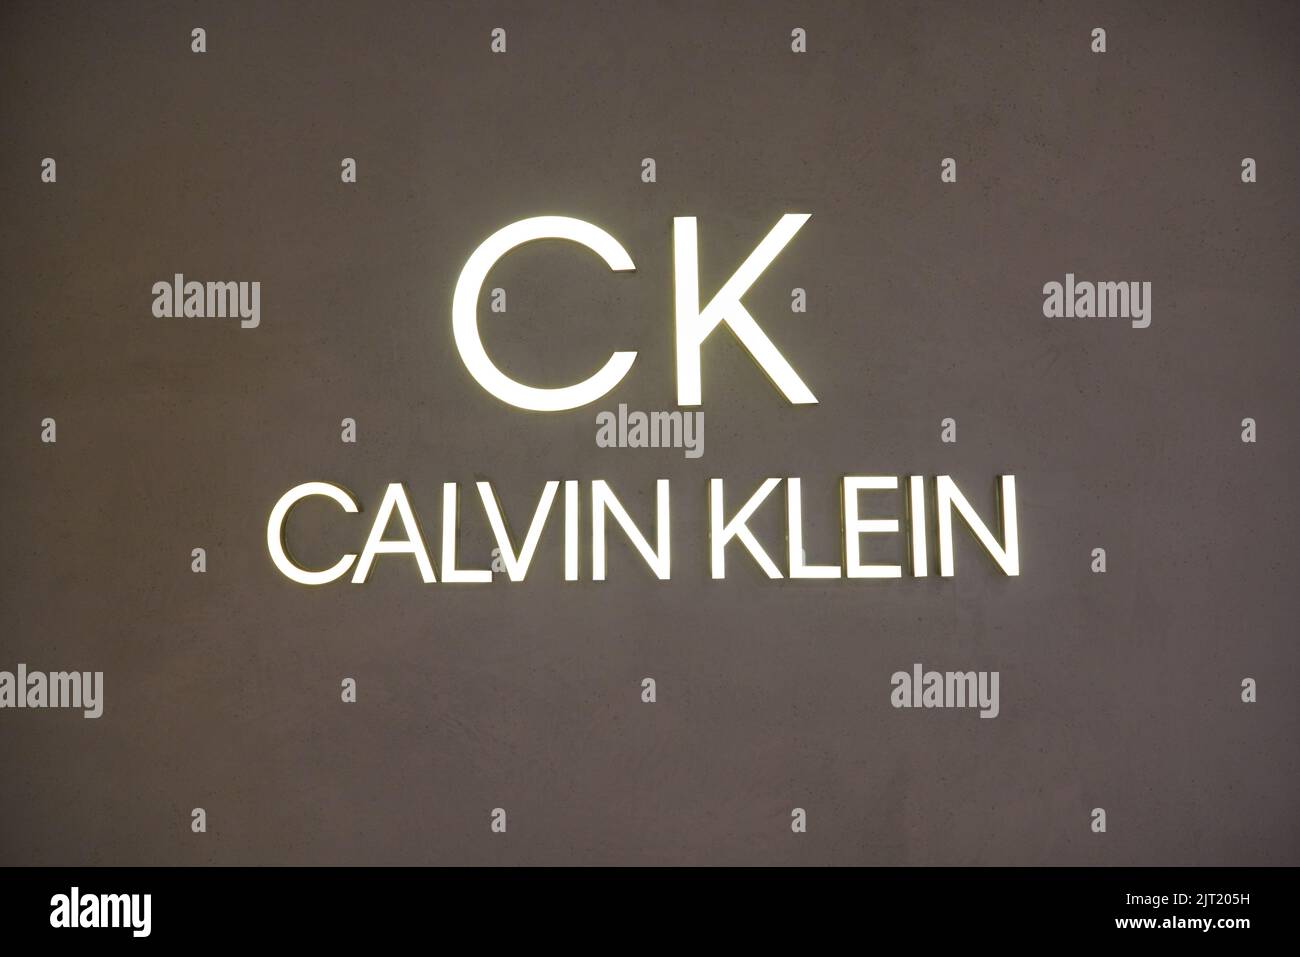 SINGAPORE - CIRCA JANUARY, 2020: close up shot of Calvin Klein sign as ...